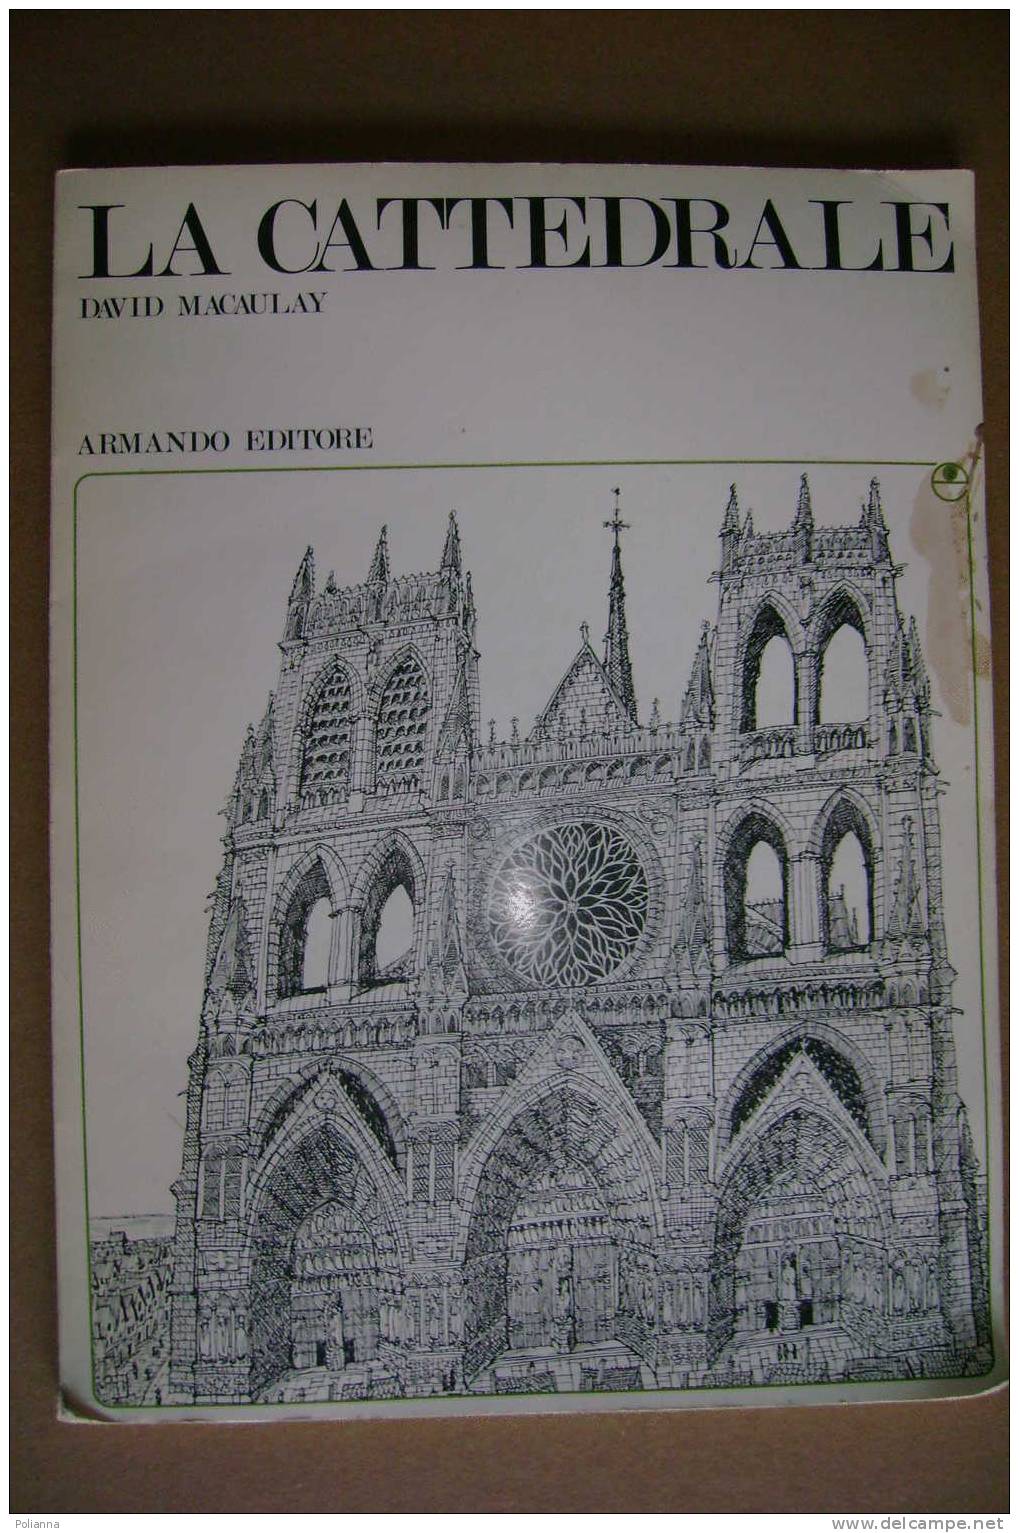 PAM/52  David Macaulay LA CATTEDRALE Armando Editore 1977/architettura - Arte, Architettura